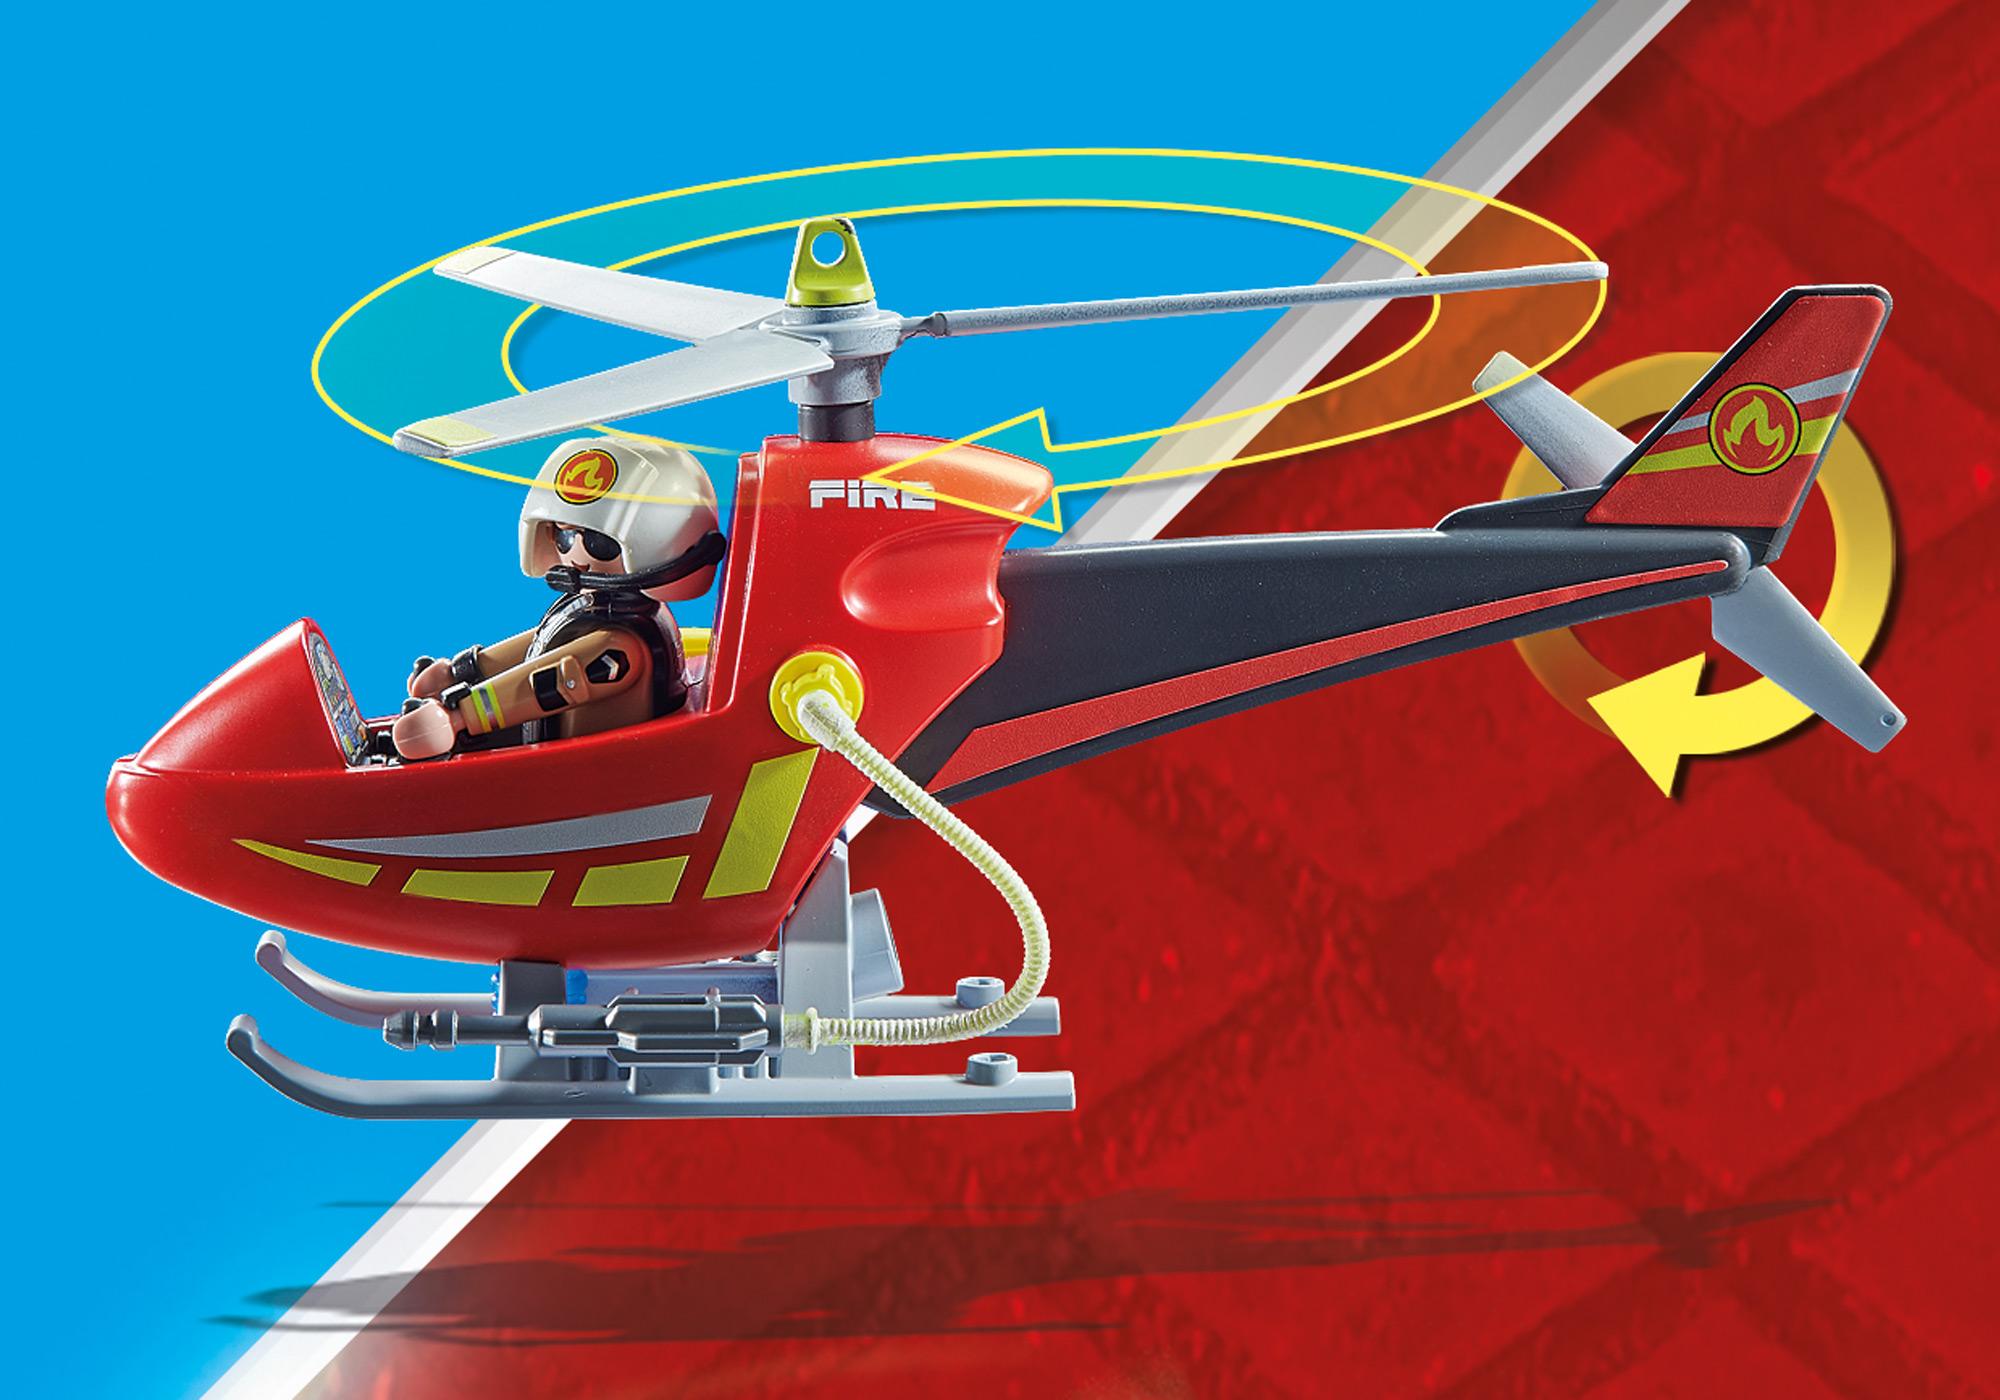 Kemiker Ubrugelig fort Fire Rescue Helicopter - 71195 | PLAYMOBIL®